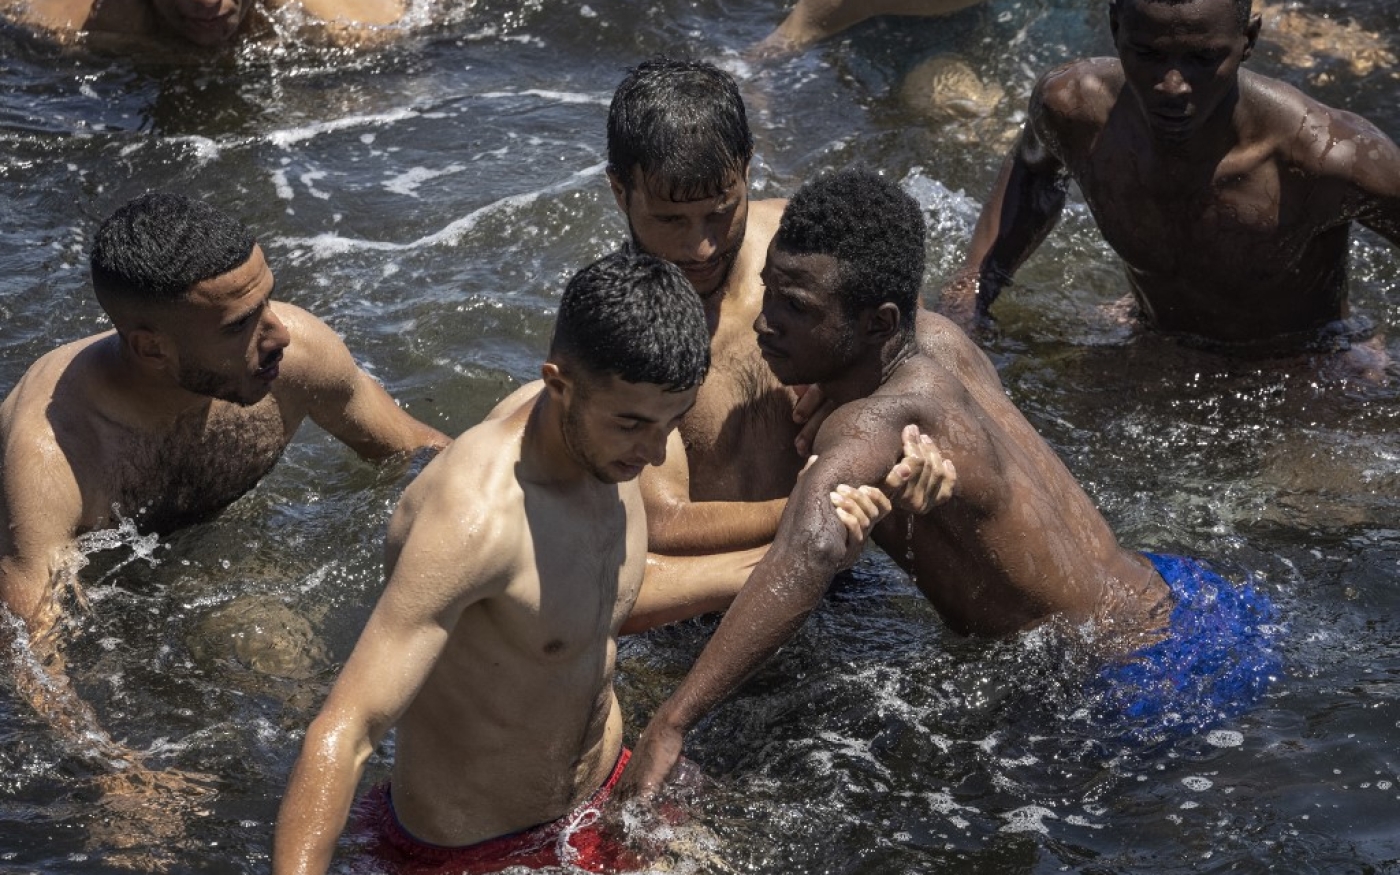 Des migrants marocains viennent en aide à un migrant subsaharien en difficulté dans l’eau, à la frontière entre le Maroc et Ceuta, le 19 mai 2021 (AFP/Fadel Senna)